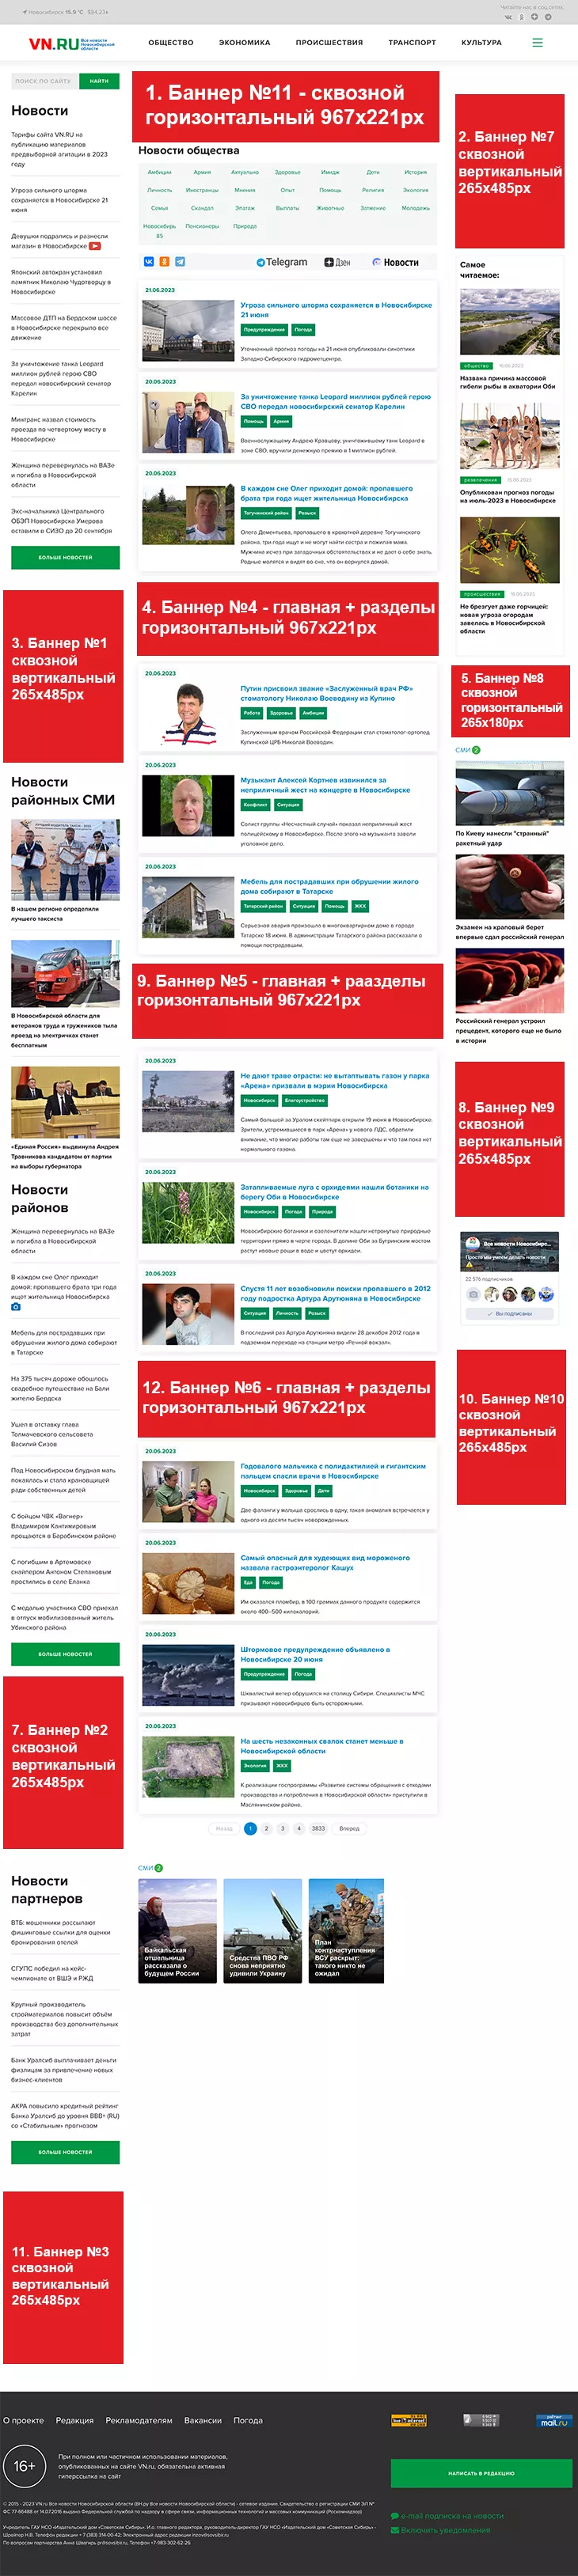 Баннерная реклама VN.ru в разделах